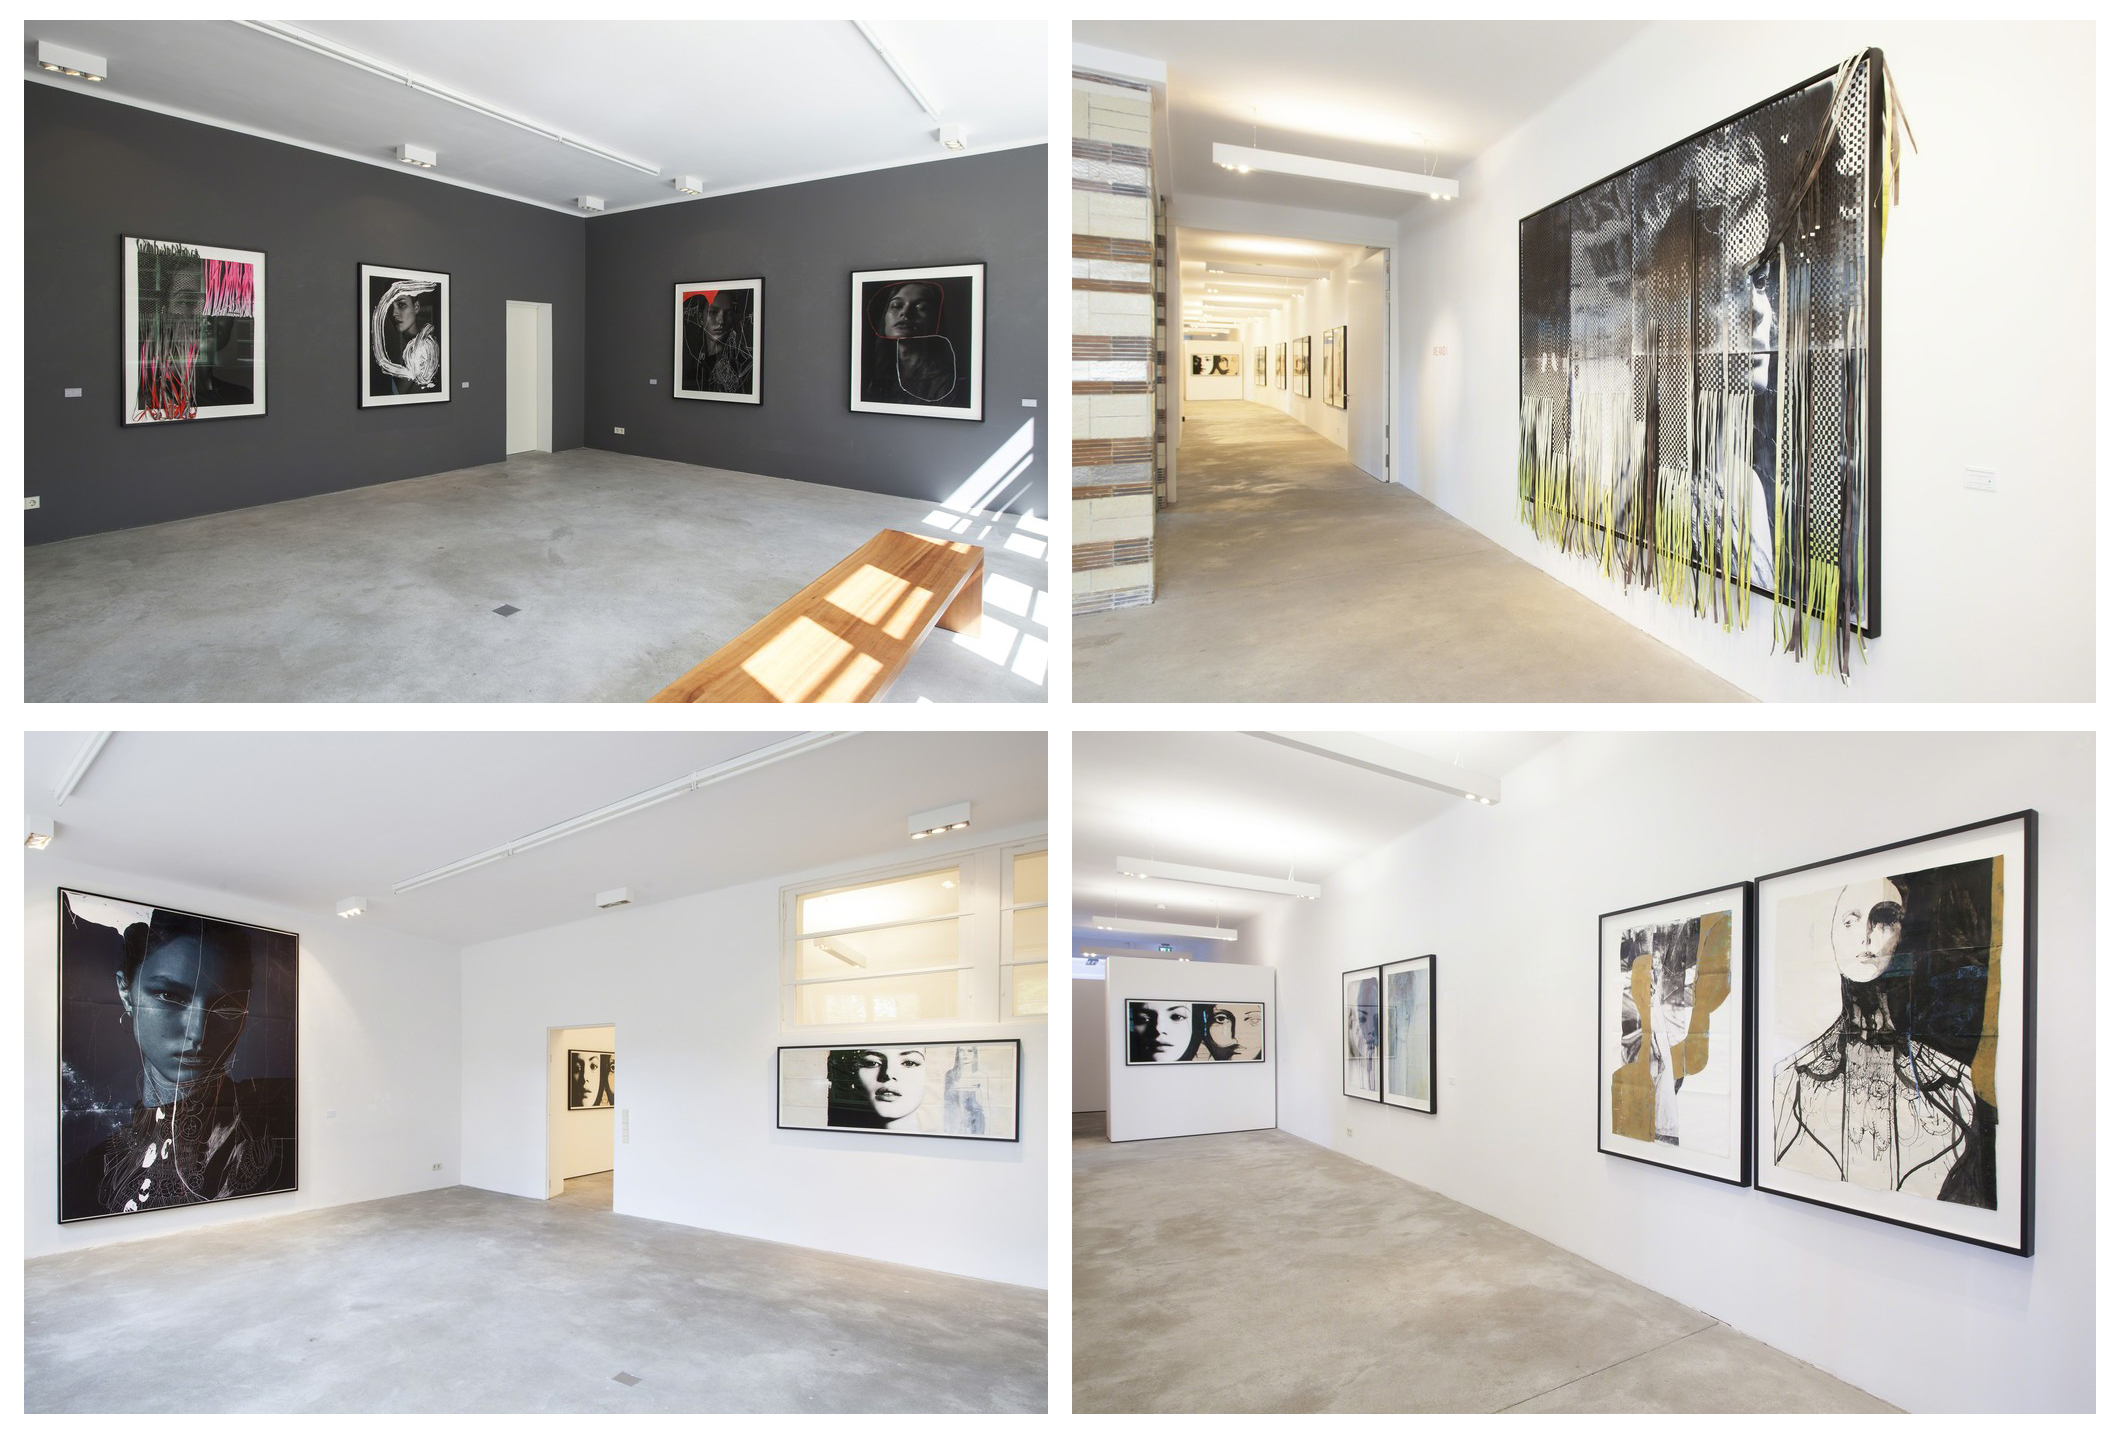 گزارش تصویری آثار Tina Berning و Michelangelo Di Battista در گالری CAMERA WORK برلین